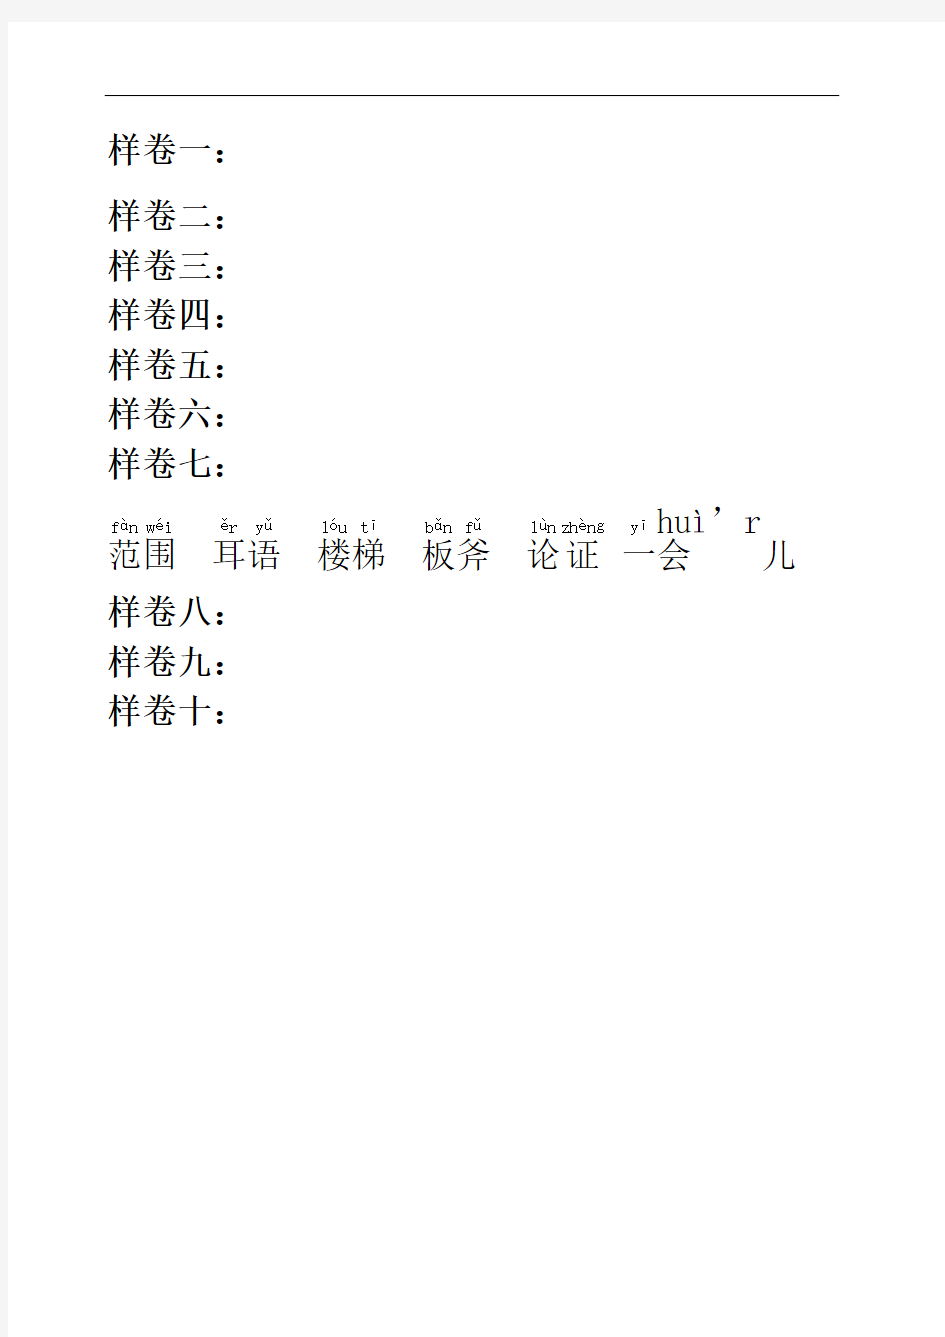 贵州省普通话测试字词样卷拼音版本